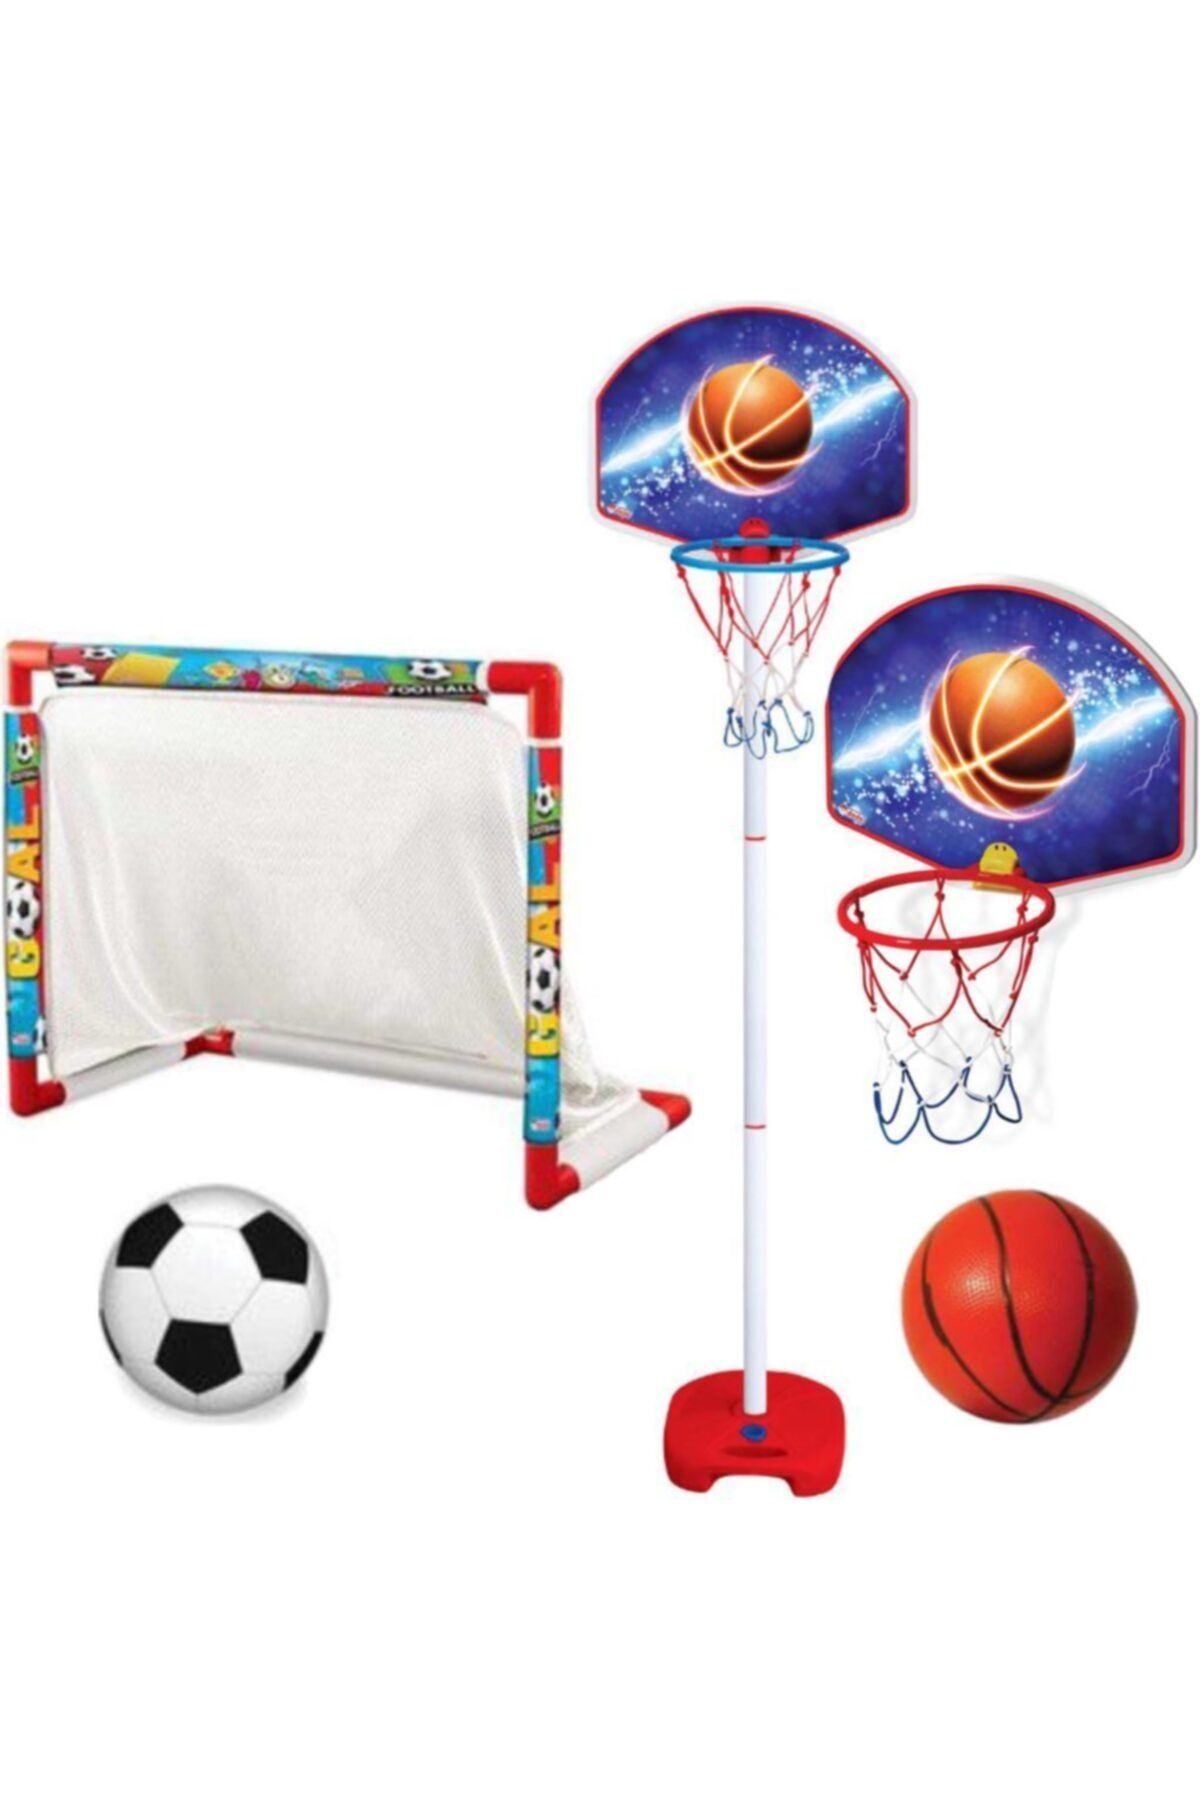 Fen Toys-Dede Futbol Kalesi Ayaklı Basketbol Potası-erkek Çocuk Oyuncakları - Oyuncak Futbol Kalesi Depomiks